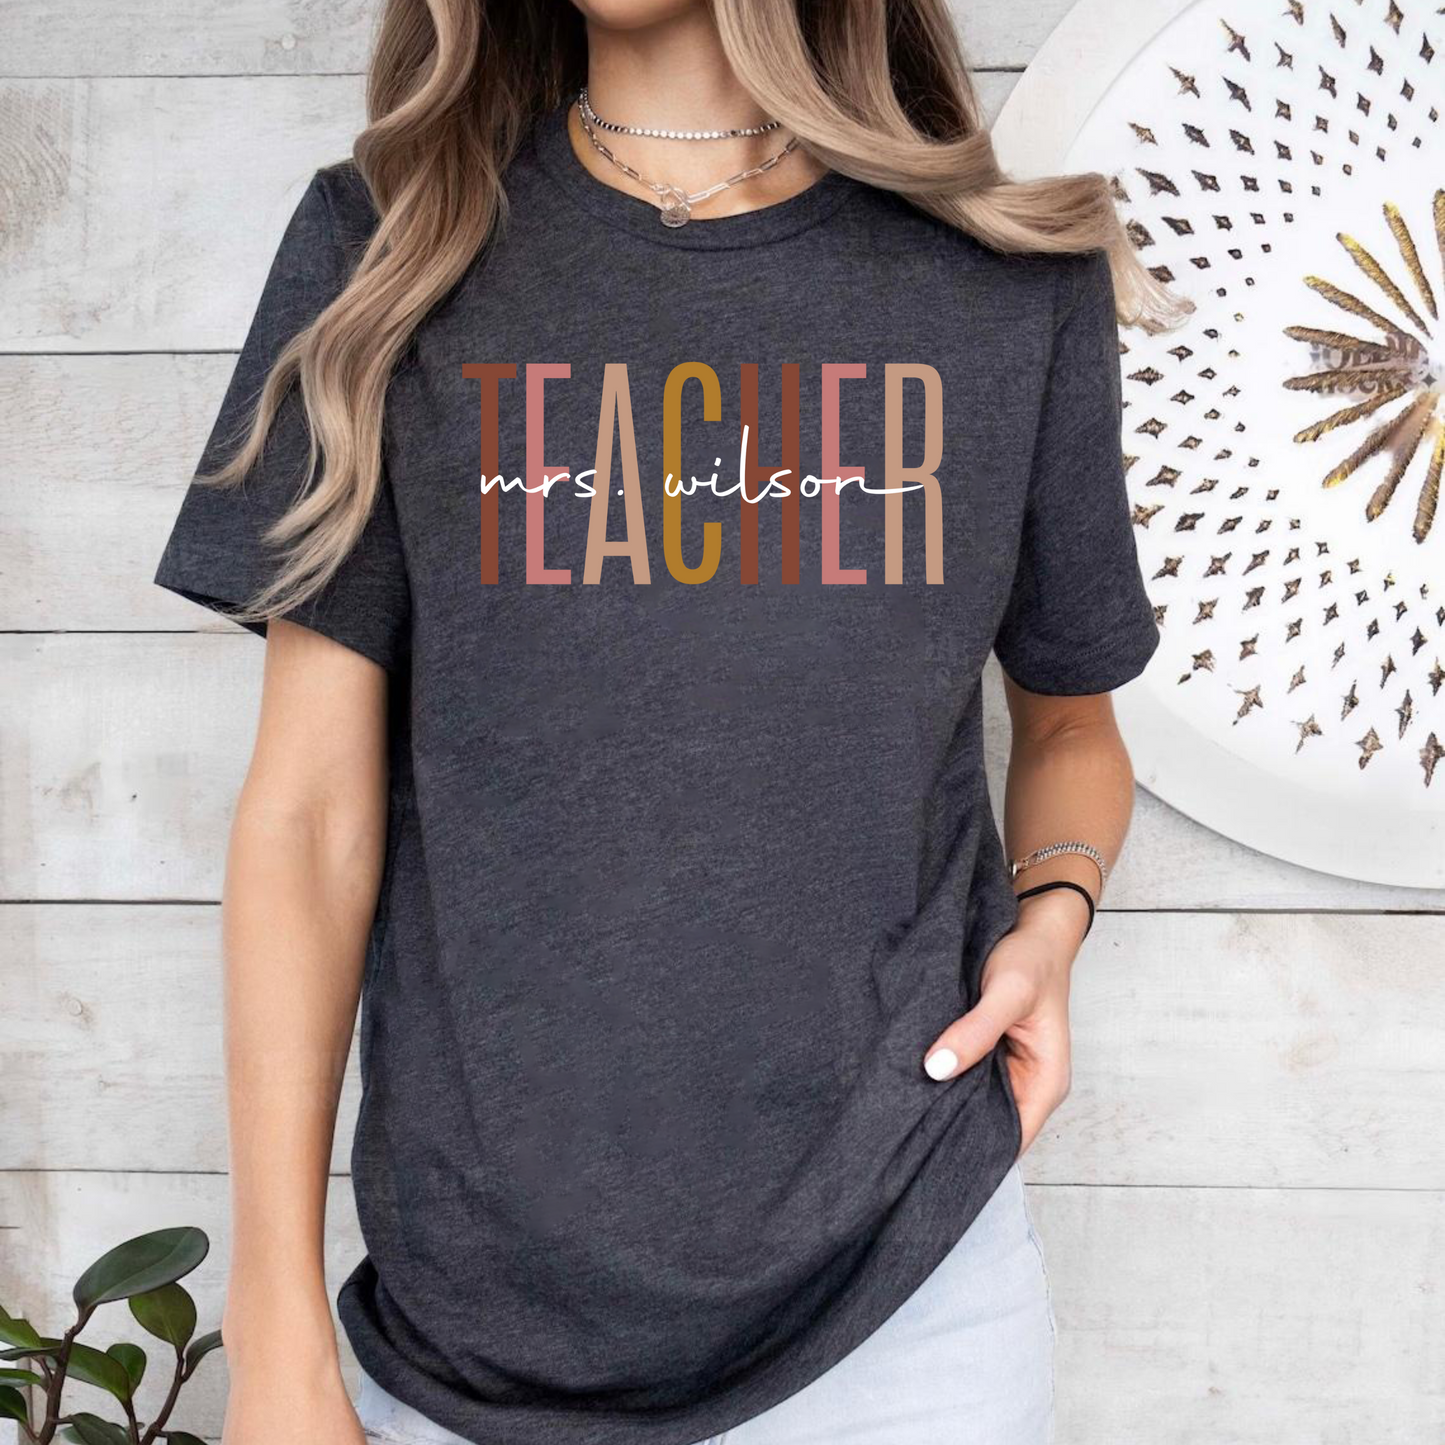 Lehrer Dankeschön Shirt - Personalisiertes Geschenk mit individuellem Namensdruck